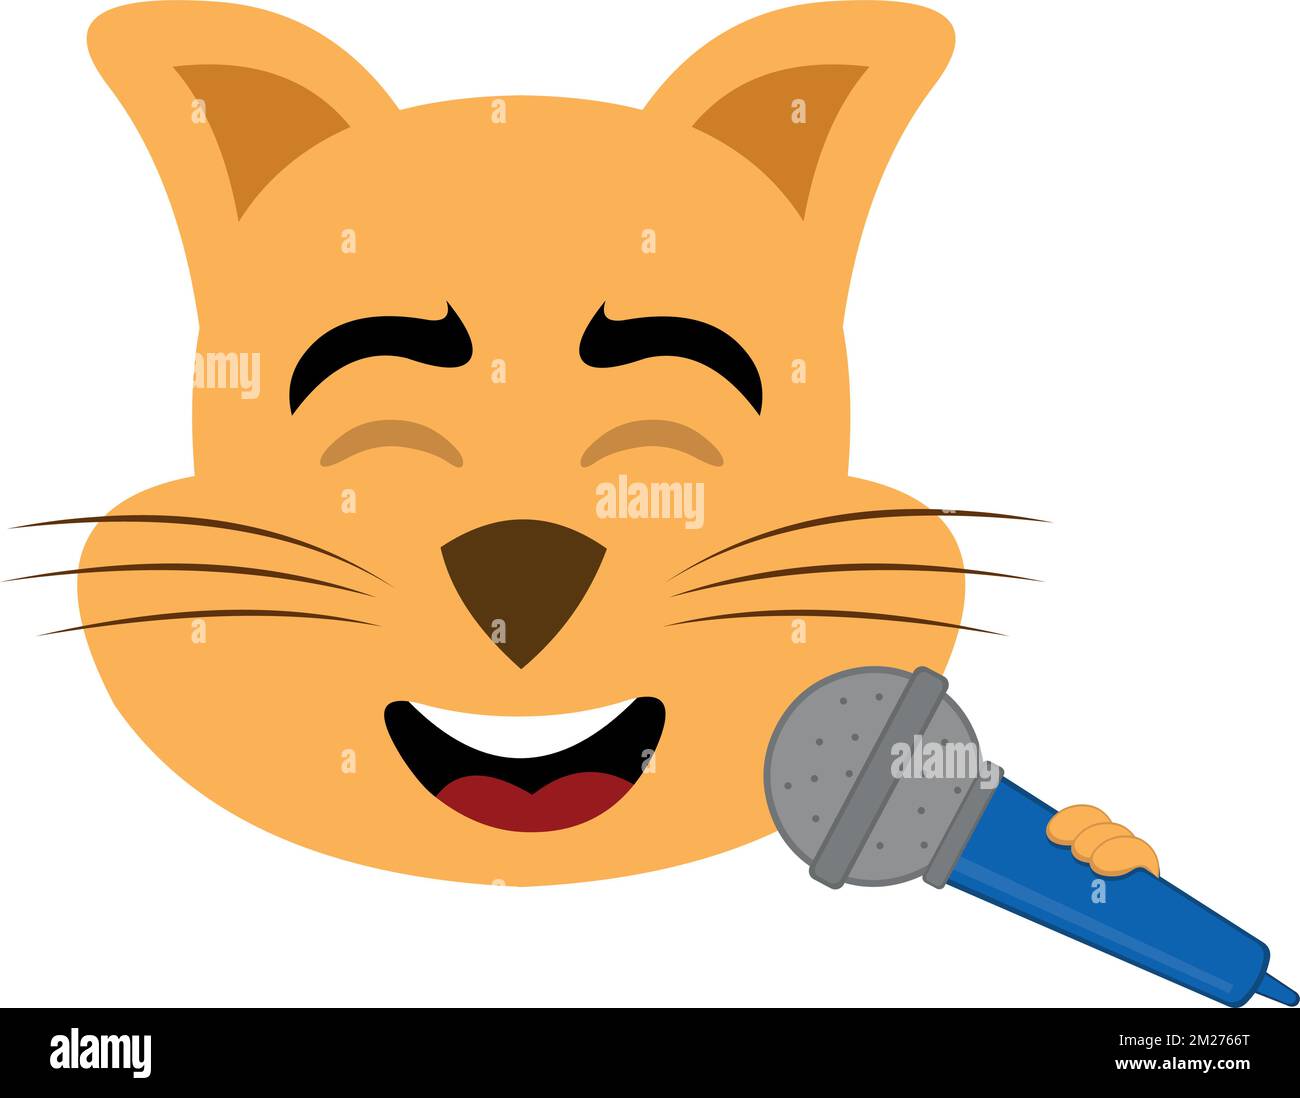 illustration vectorielle du visage d'un chat de dessin animé chantant avec un microphone en main Illustration de Vecteur